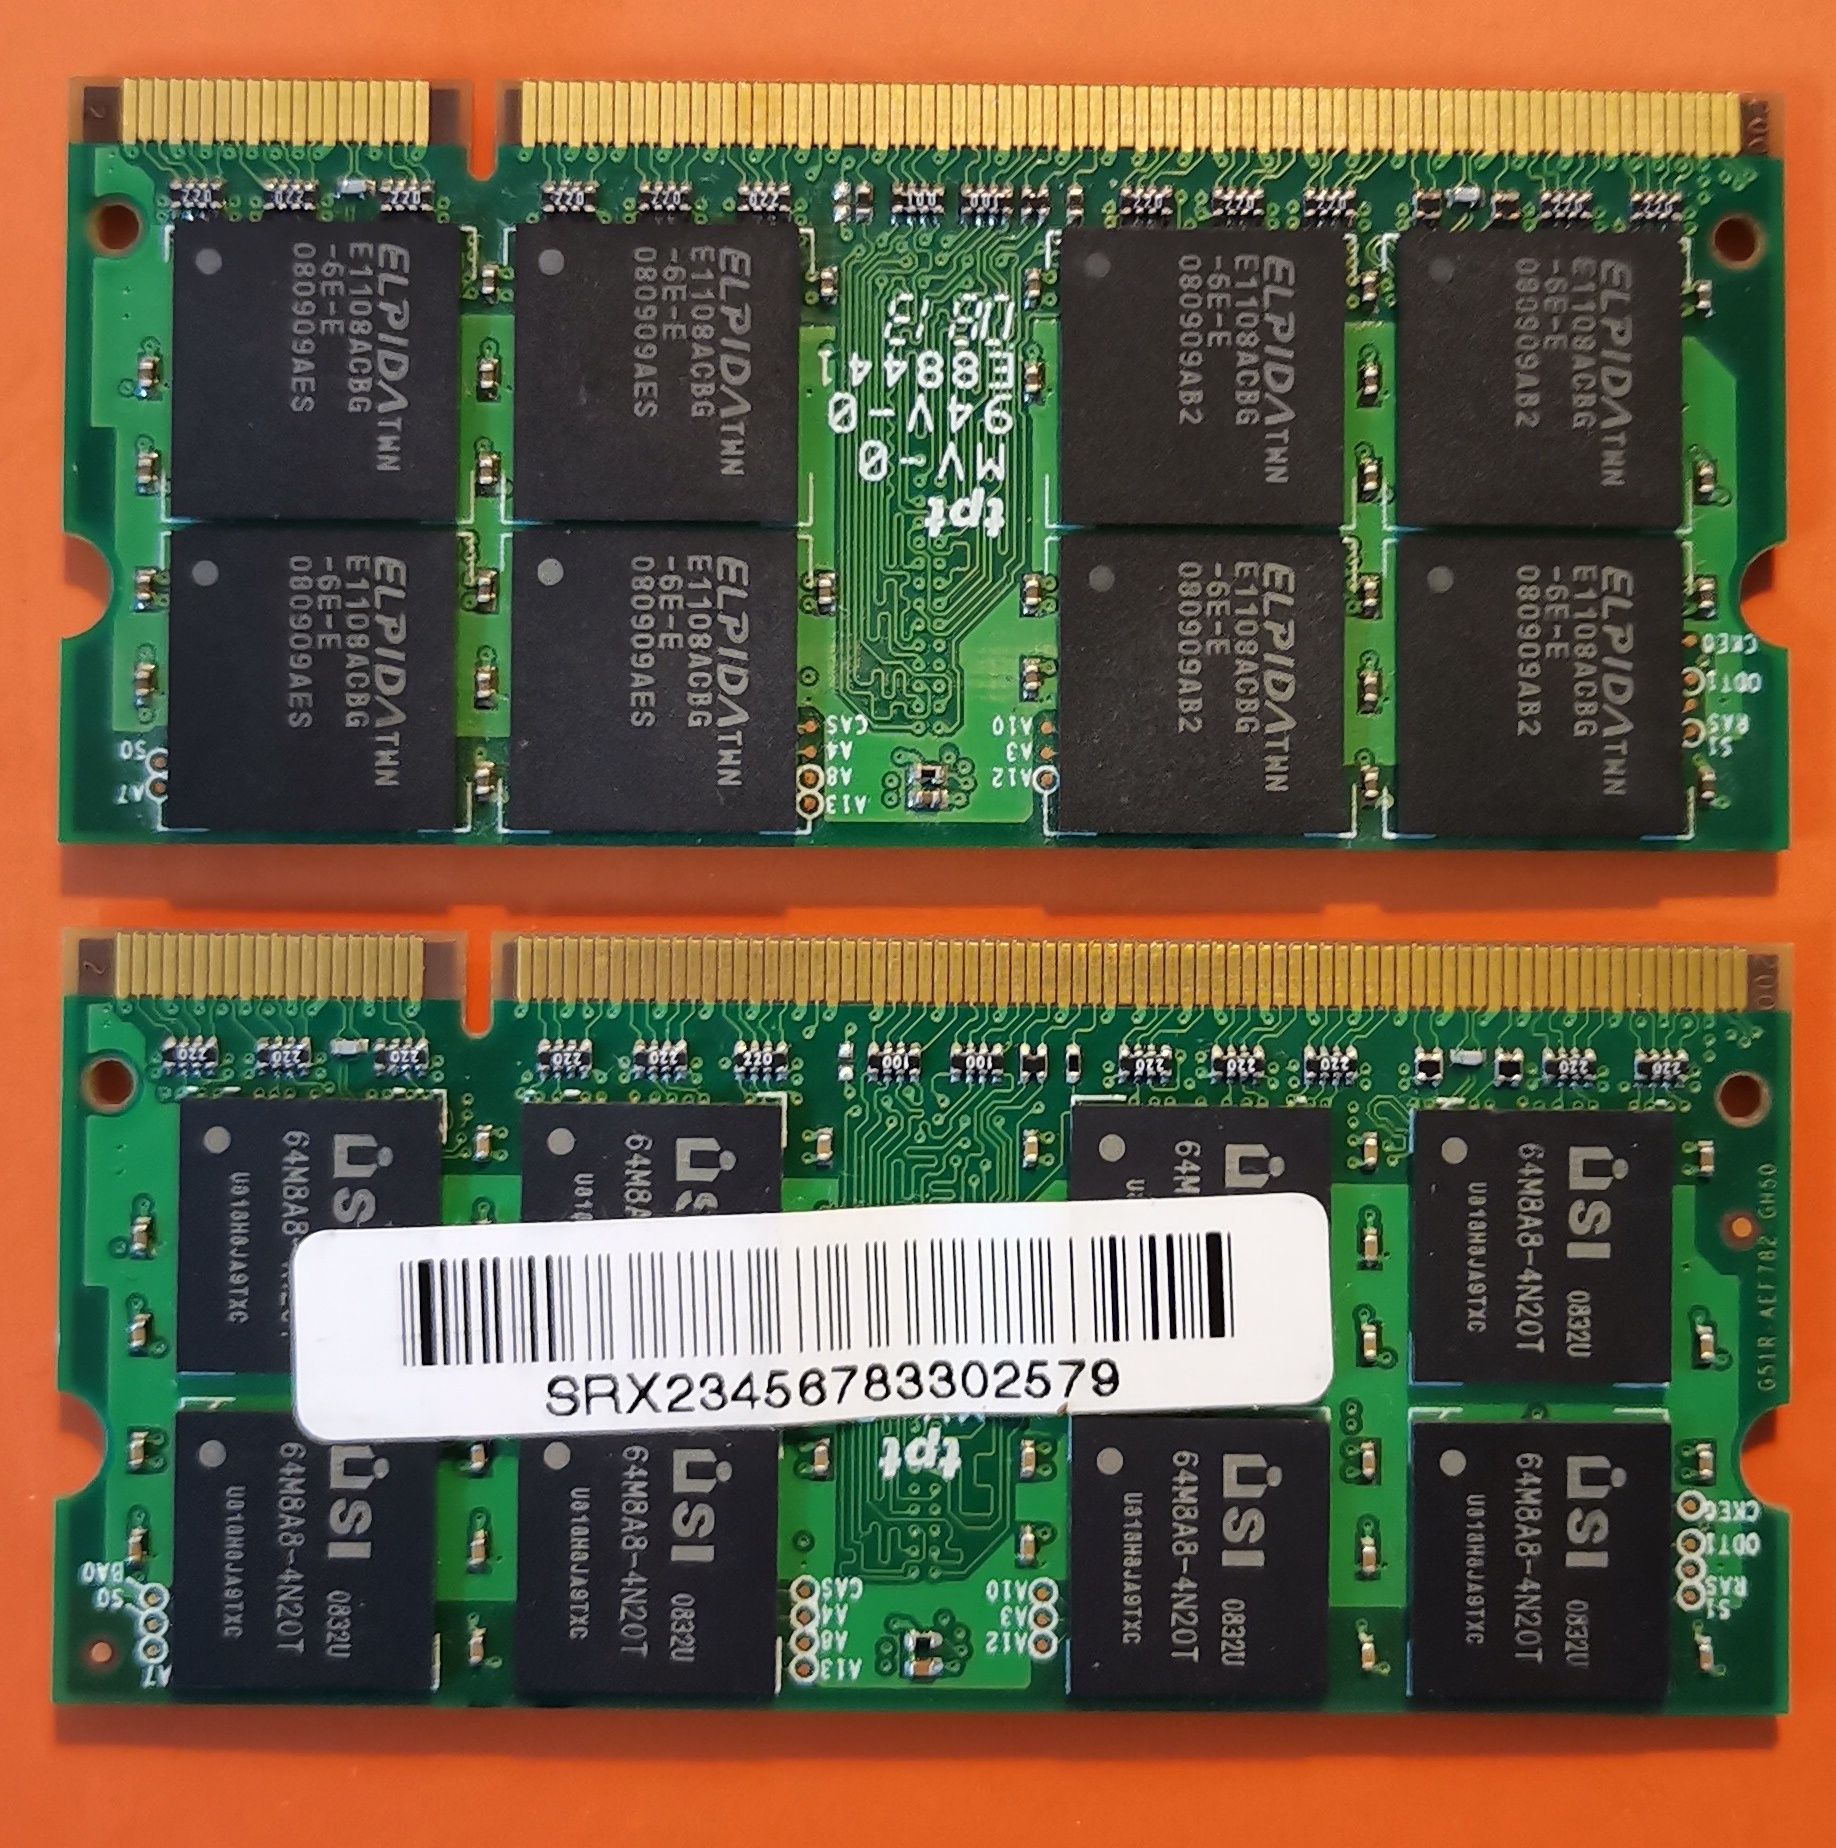 2x Unifosa GDDR 2-667 1x2GB e 1x1GB 200 pins p laptops